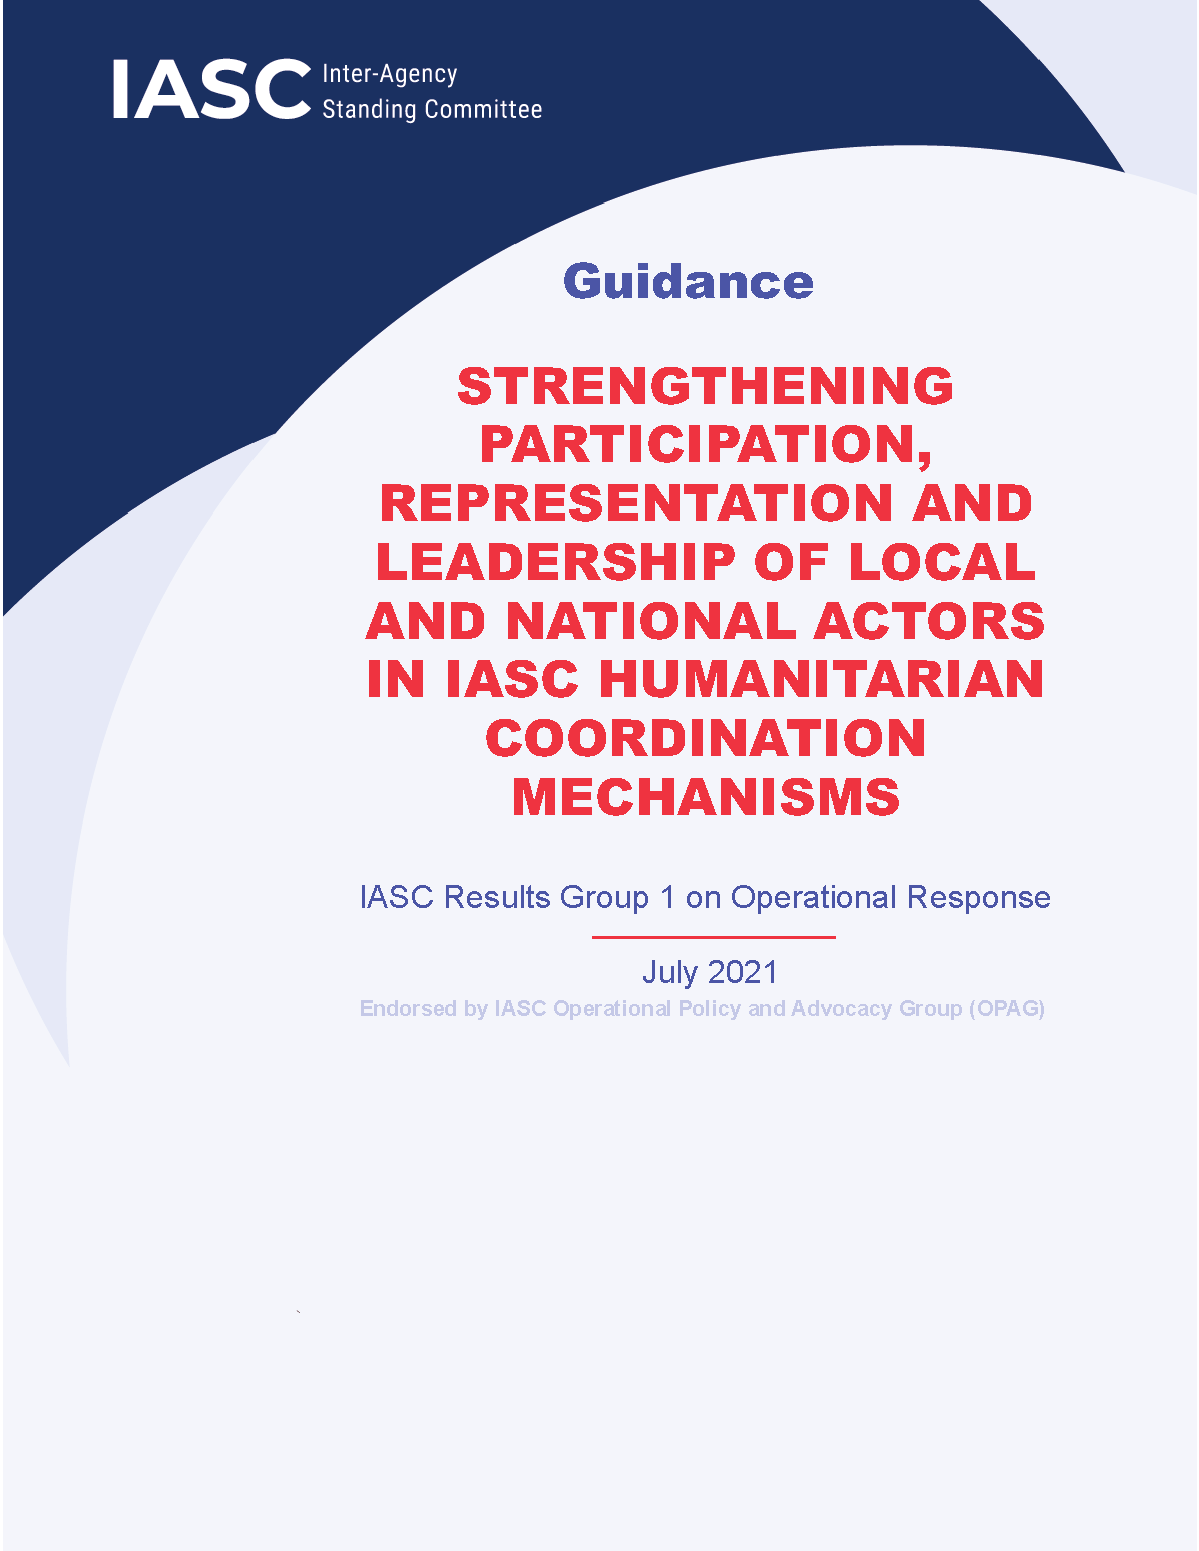 Page de couverture pour le renforcement de la participation, de la représentation et du leadership des acteurs locaux et nationaux dans les mécanismes de coordination humanitaire de l'IASC